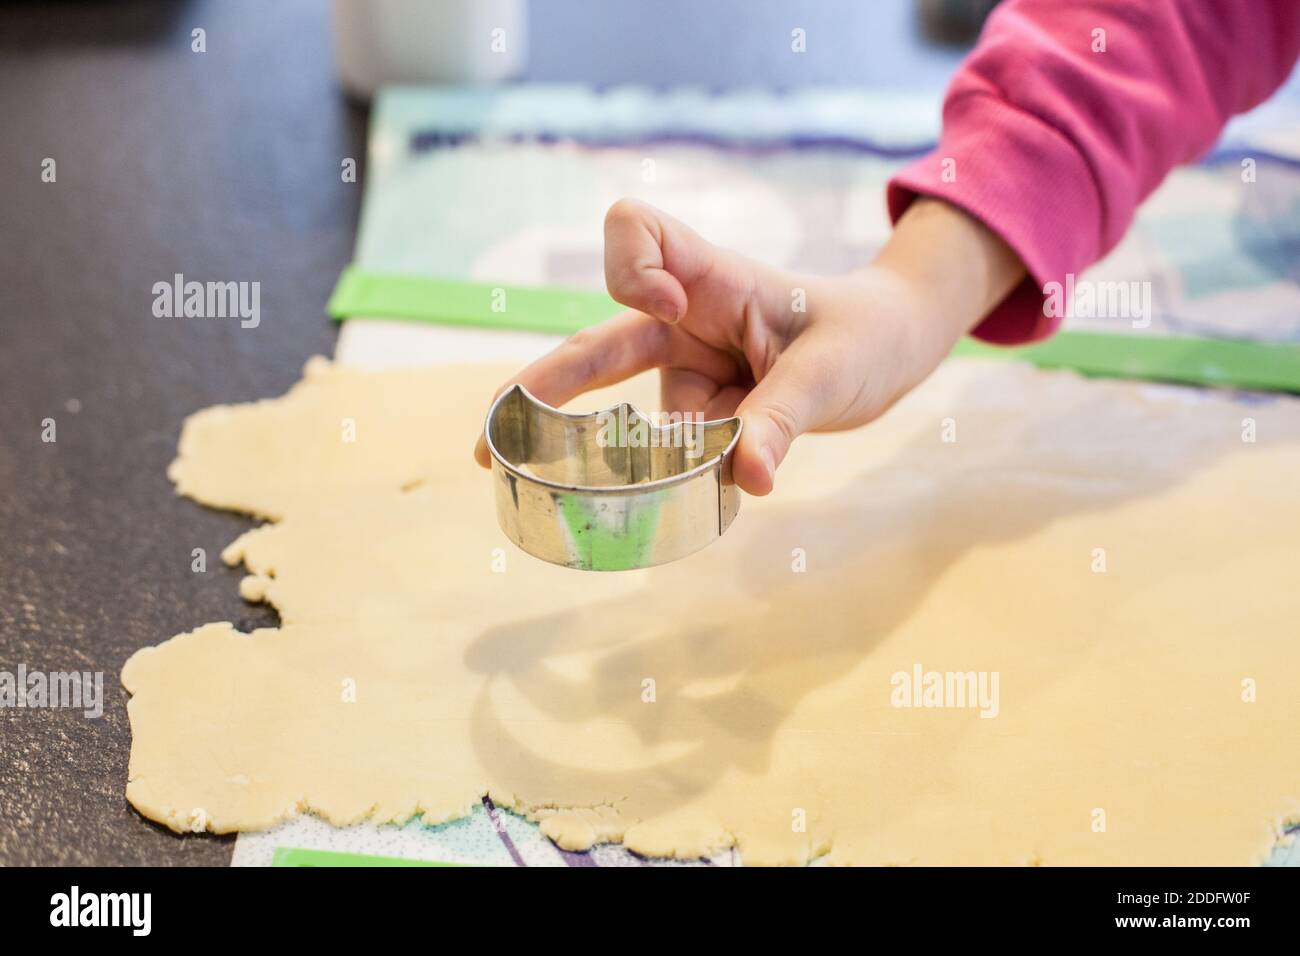 Bamberg, Deutschland 22. November 2020: Symbolbilder - 2020 - aus dem hausgemachten Teig, der auf einer Oberfläche ausgerollt wird, schneidet eine Kinderhand mit einem Cutter Kekse aus. Weltweite Nutzung Stockfoto